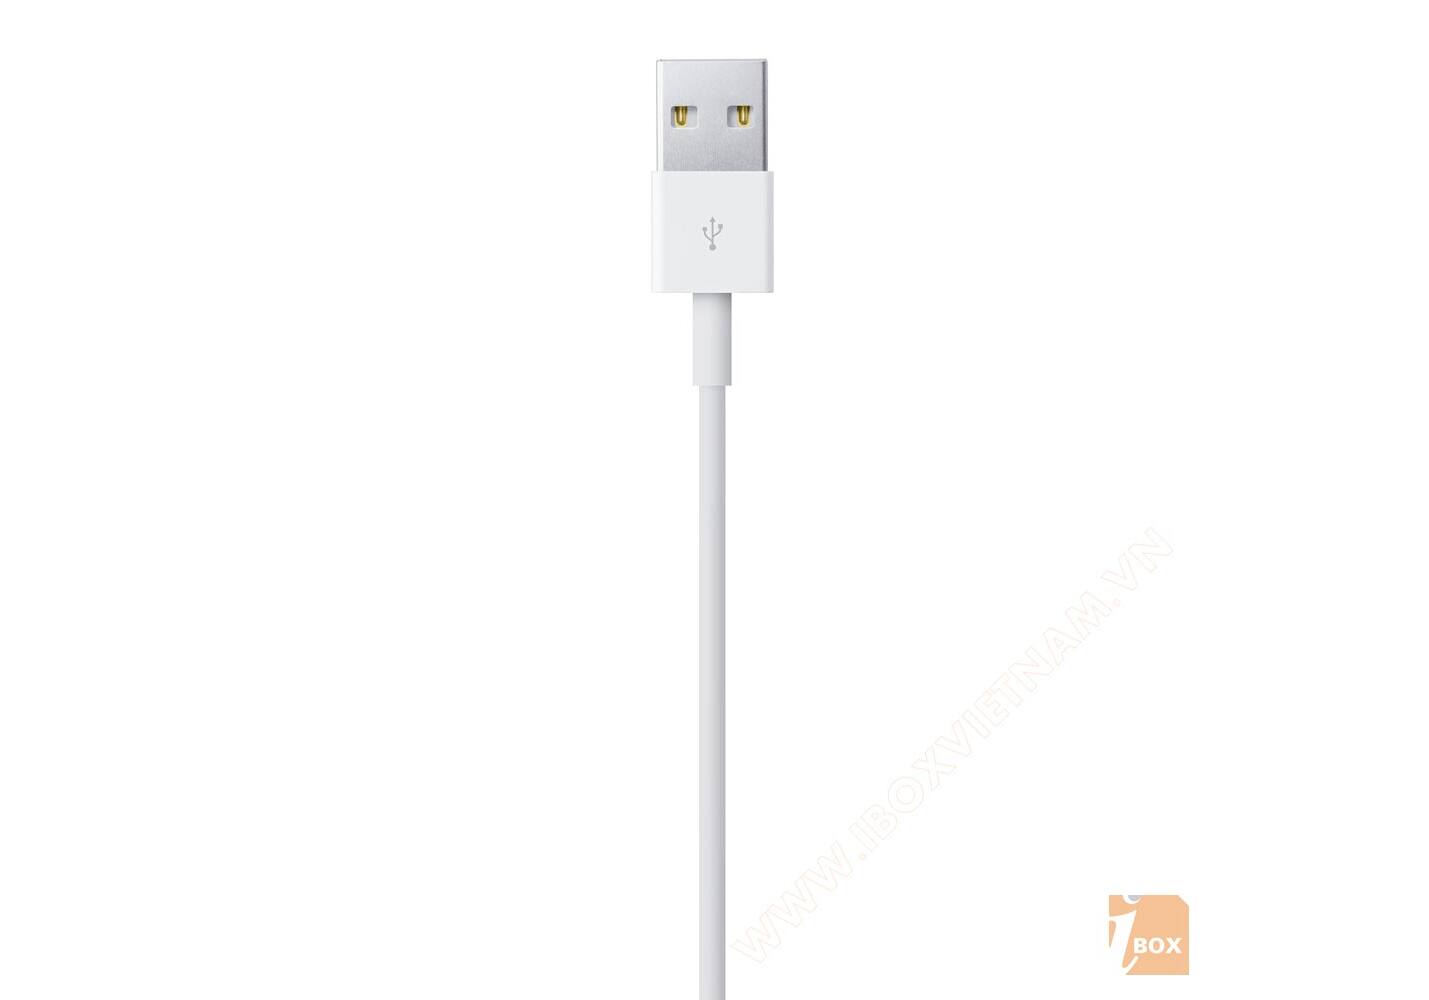 Cáp sạc iPhone Lightning to USB Apple Cable giá rẻ, bảo hành chính hãng uy  tín số 1 Hải Phòng